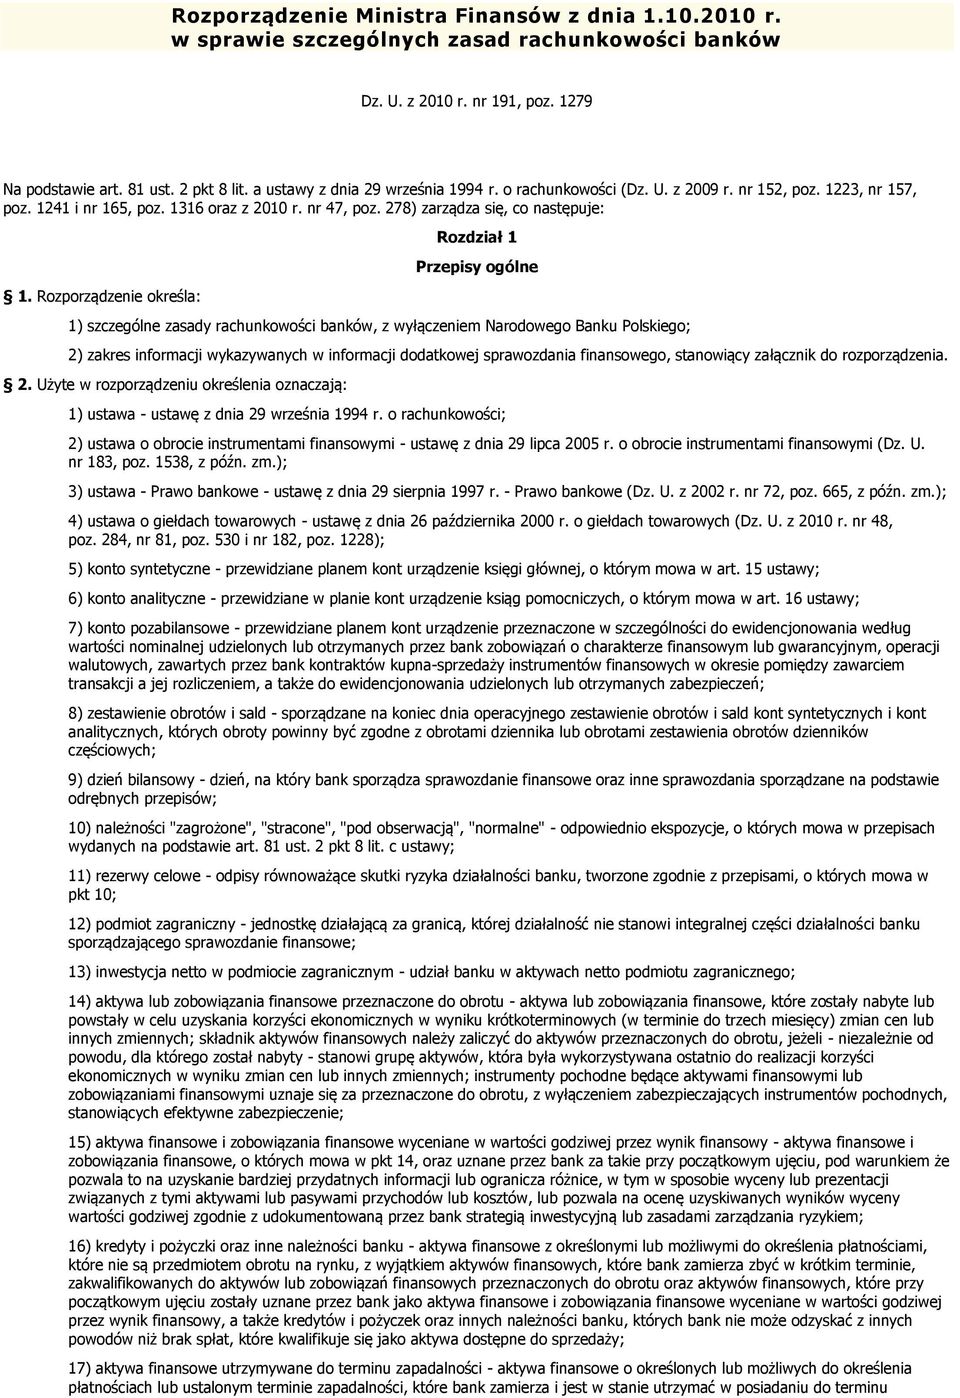 Rozporządzenie określa: Rozdział 1 Przepisy ogólne 1) szczególne zasady rachunkowości banków, z wyłączeniem Narodowego Banku Polskiego; 2) zakres informacji wykazywanych w informacji dodatkowej